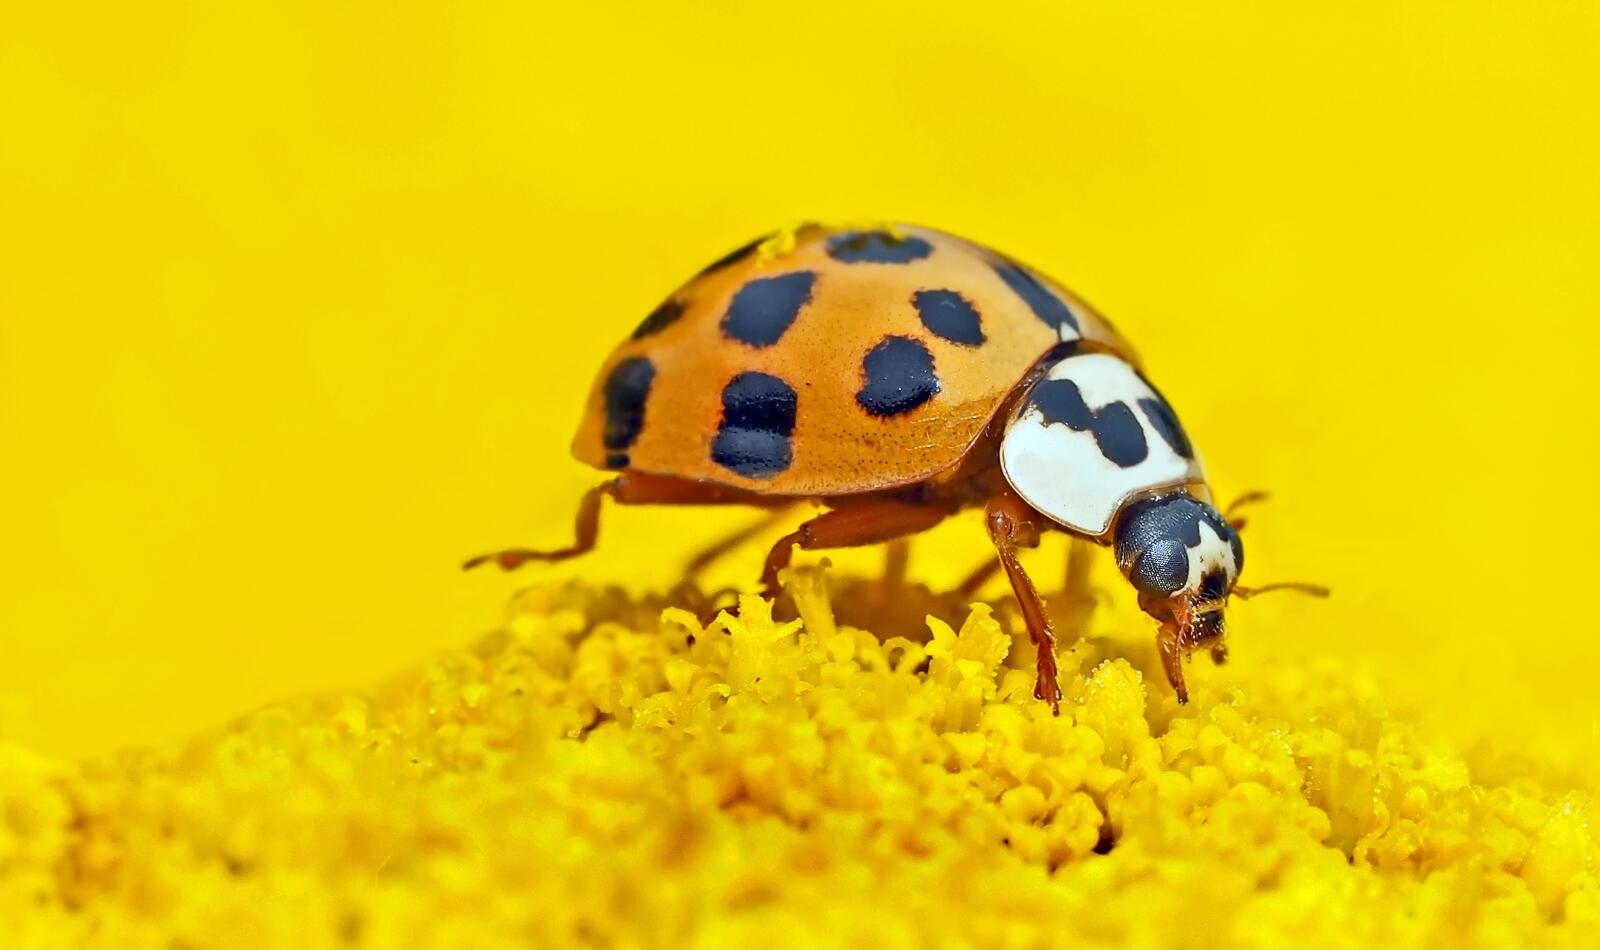 Free photo Ladybug on yellow background